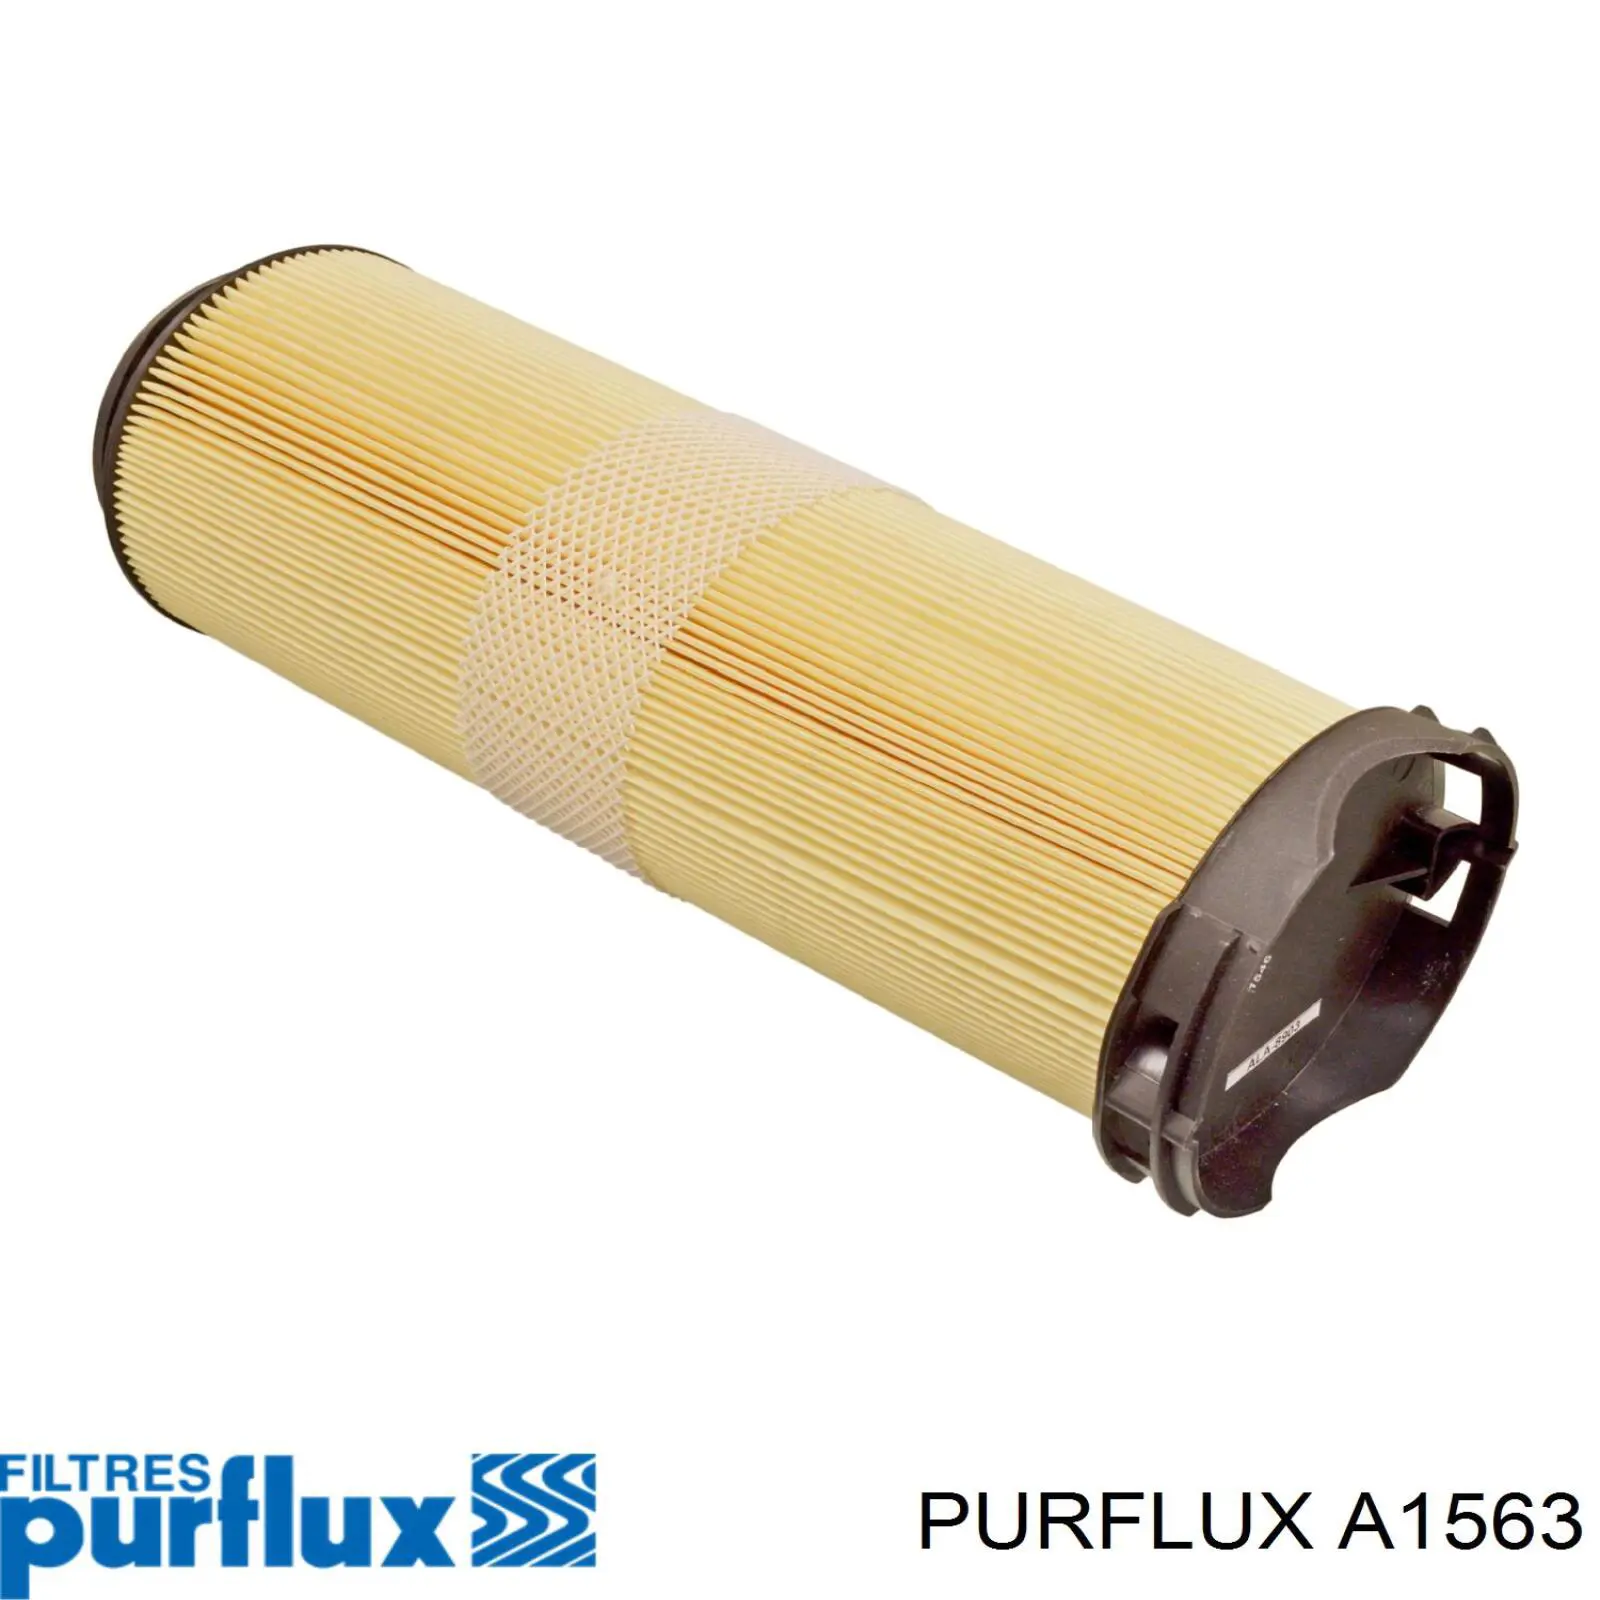 A1563 Purflux filtro de aire